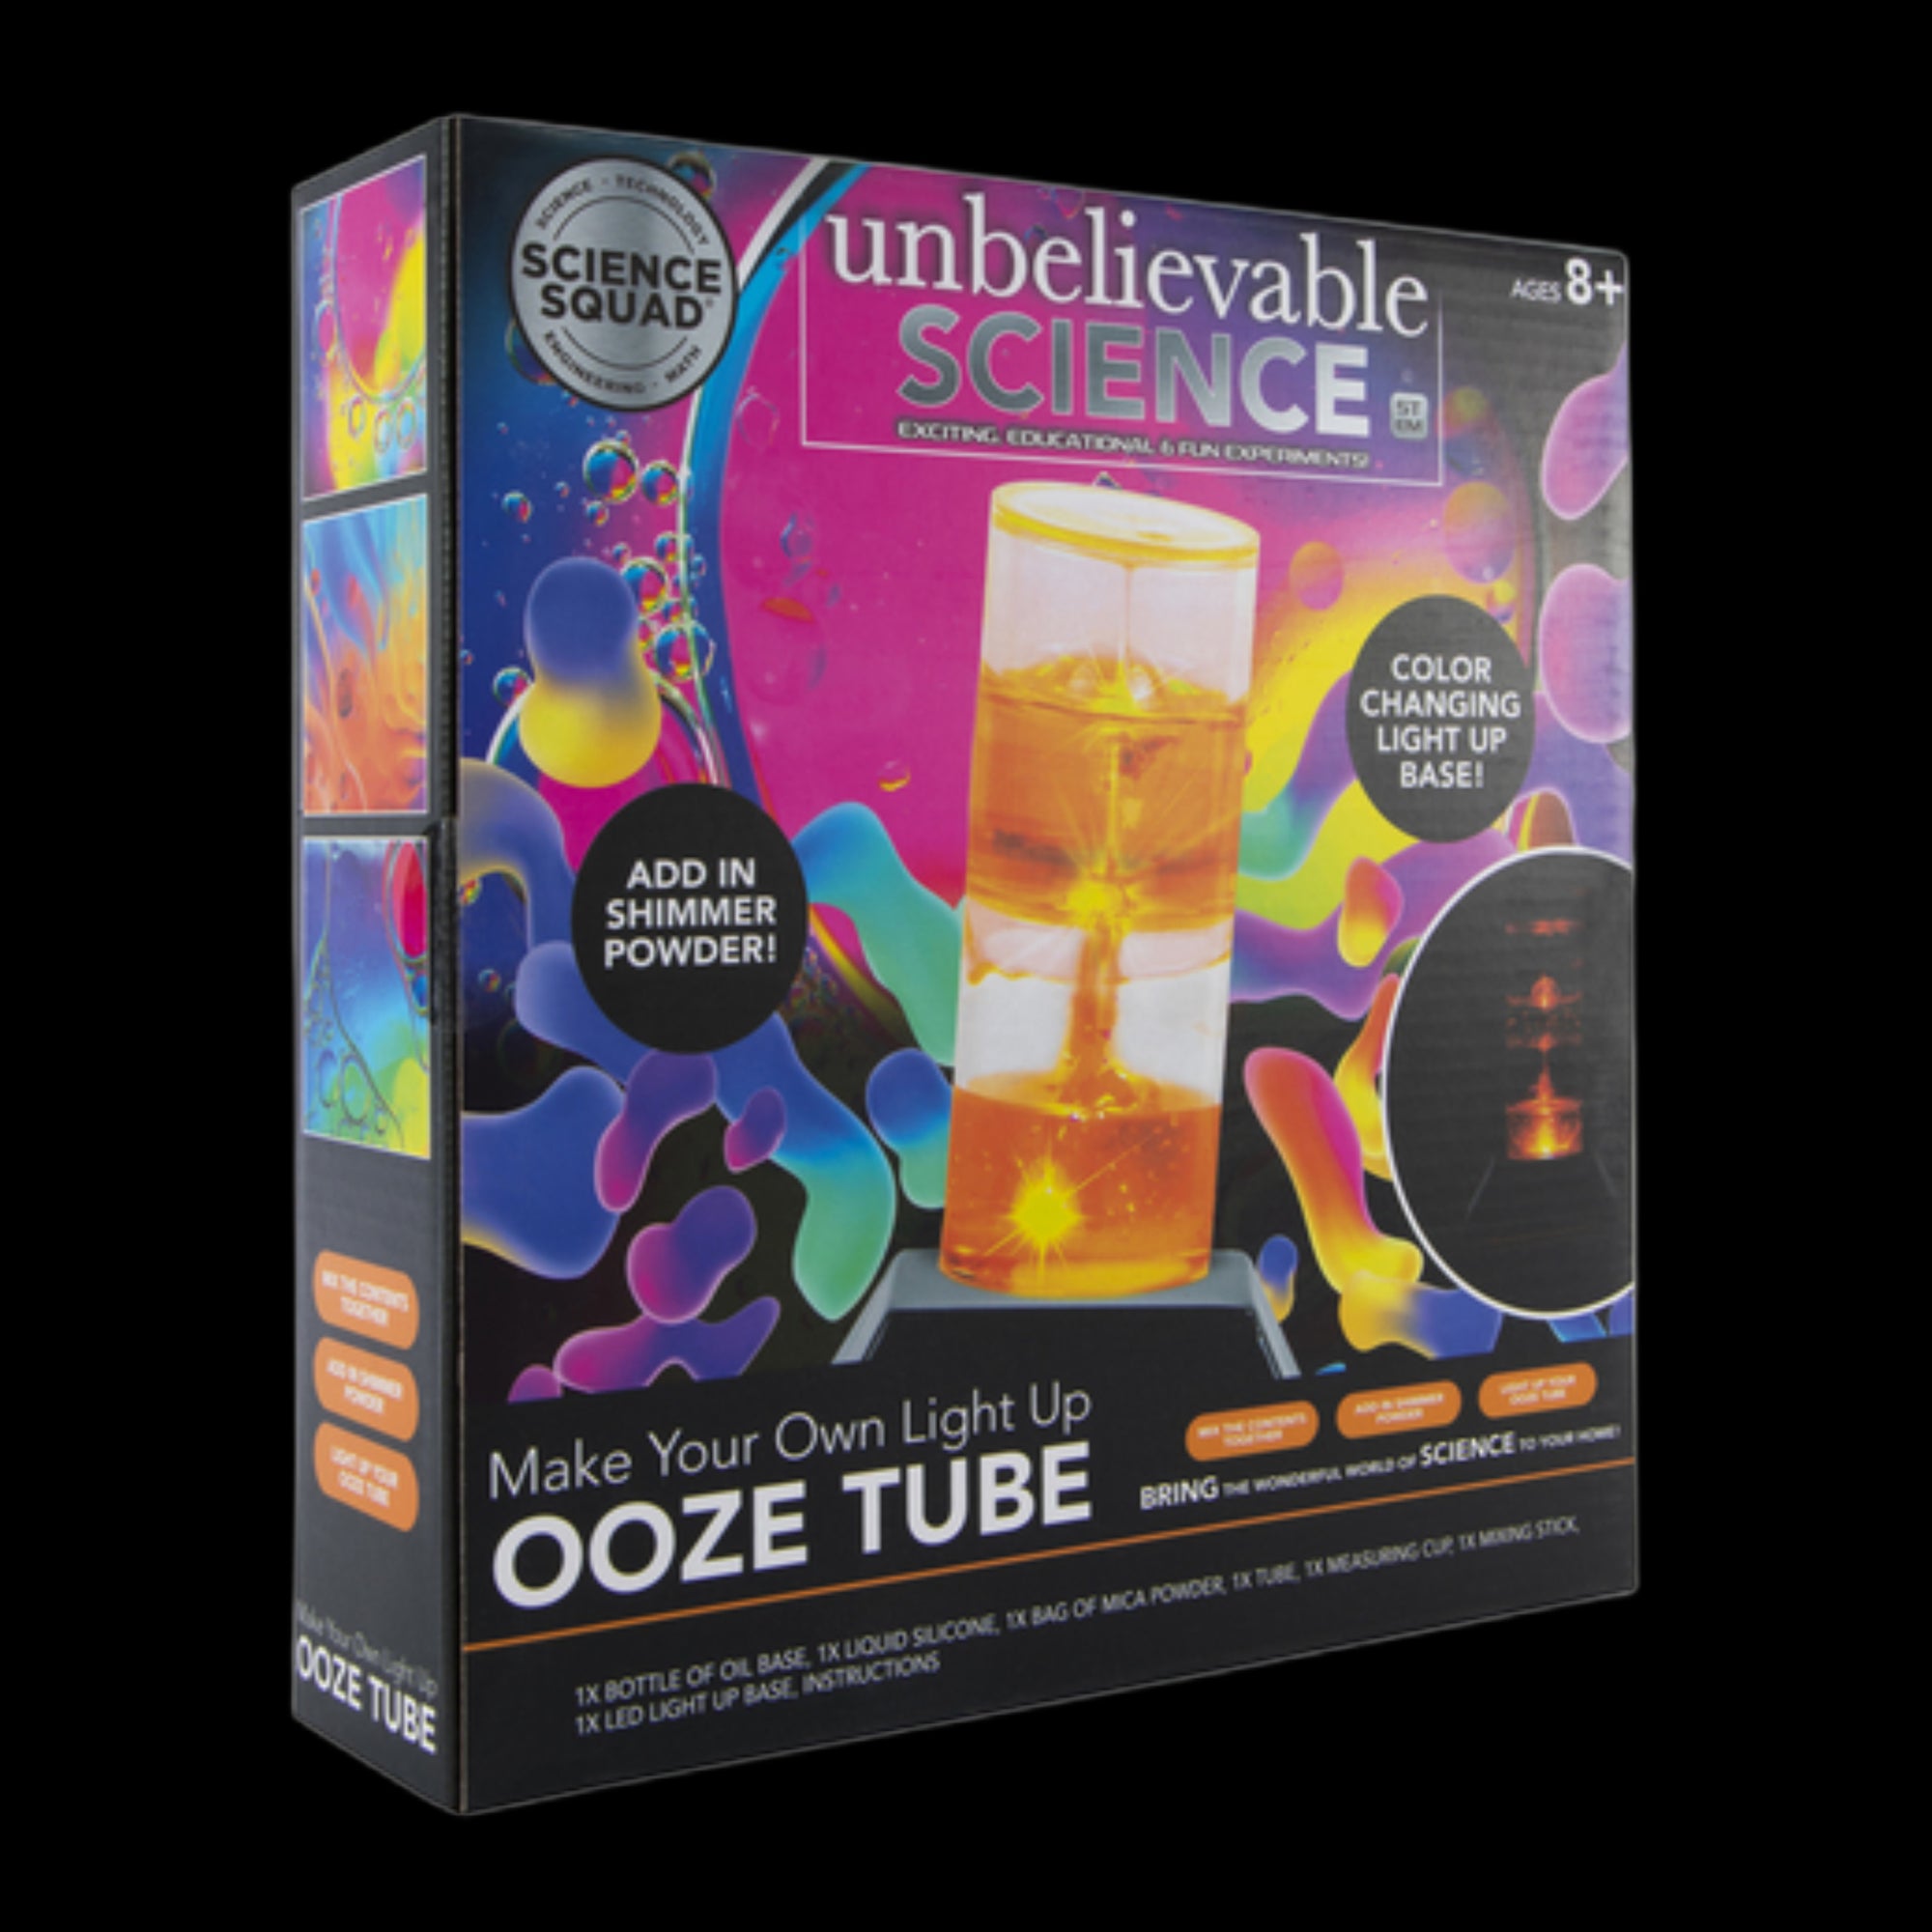 Ooze Tube Kit